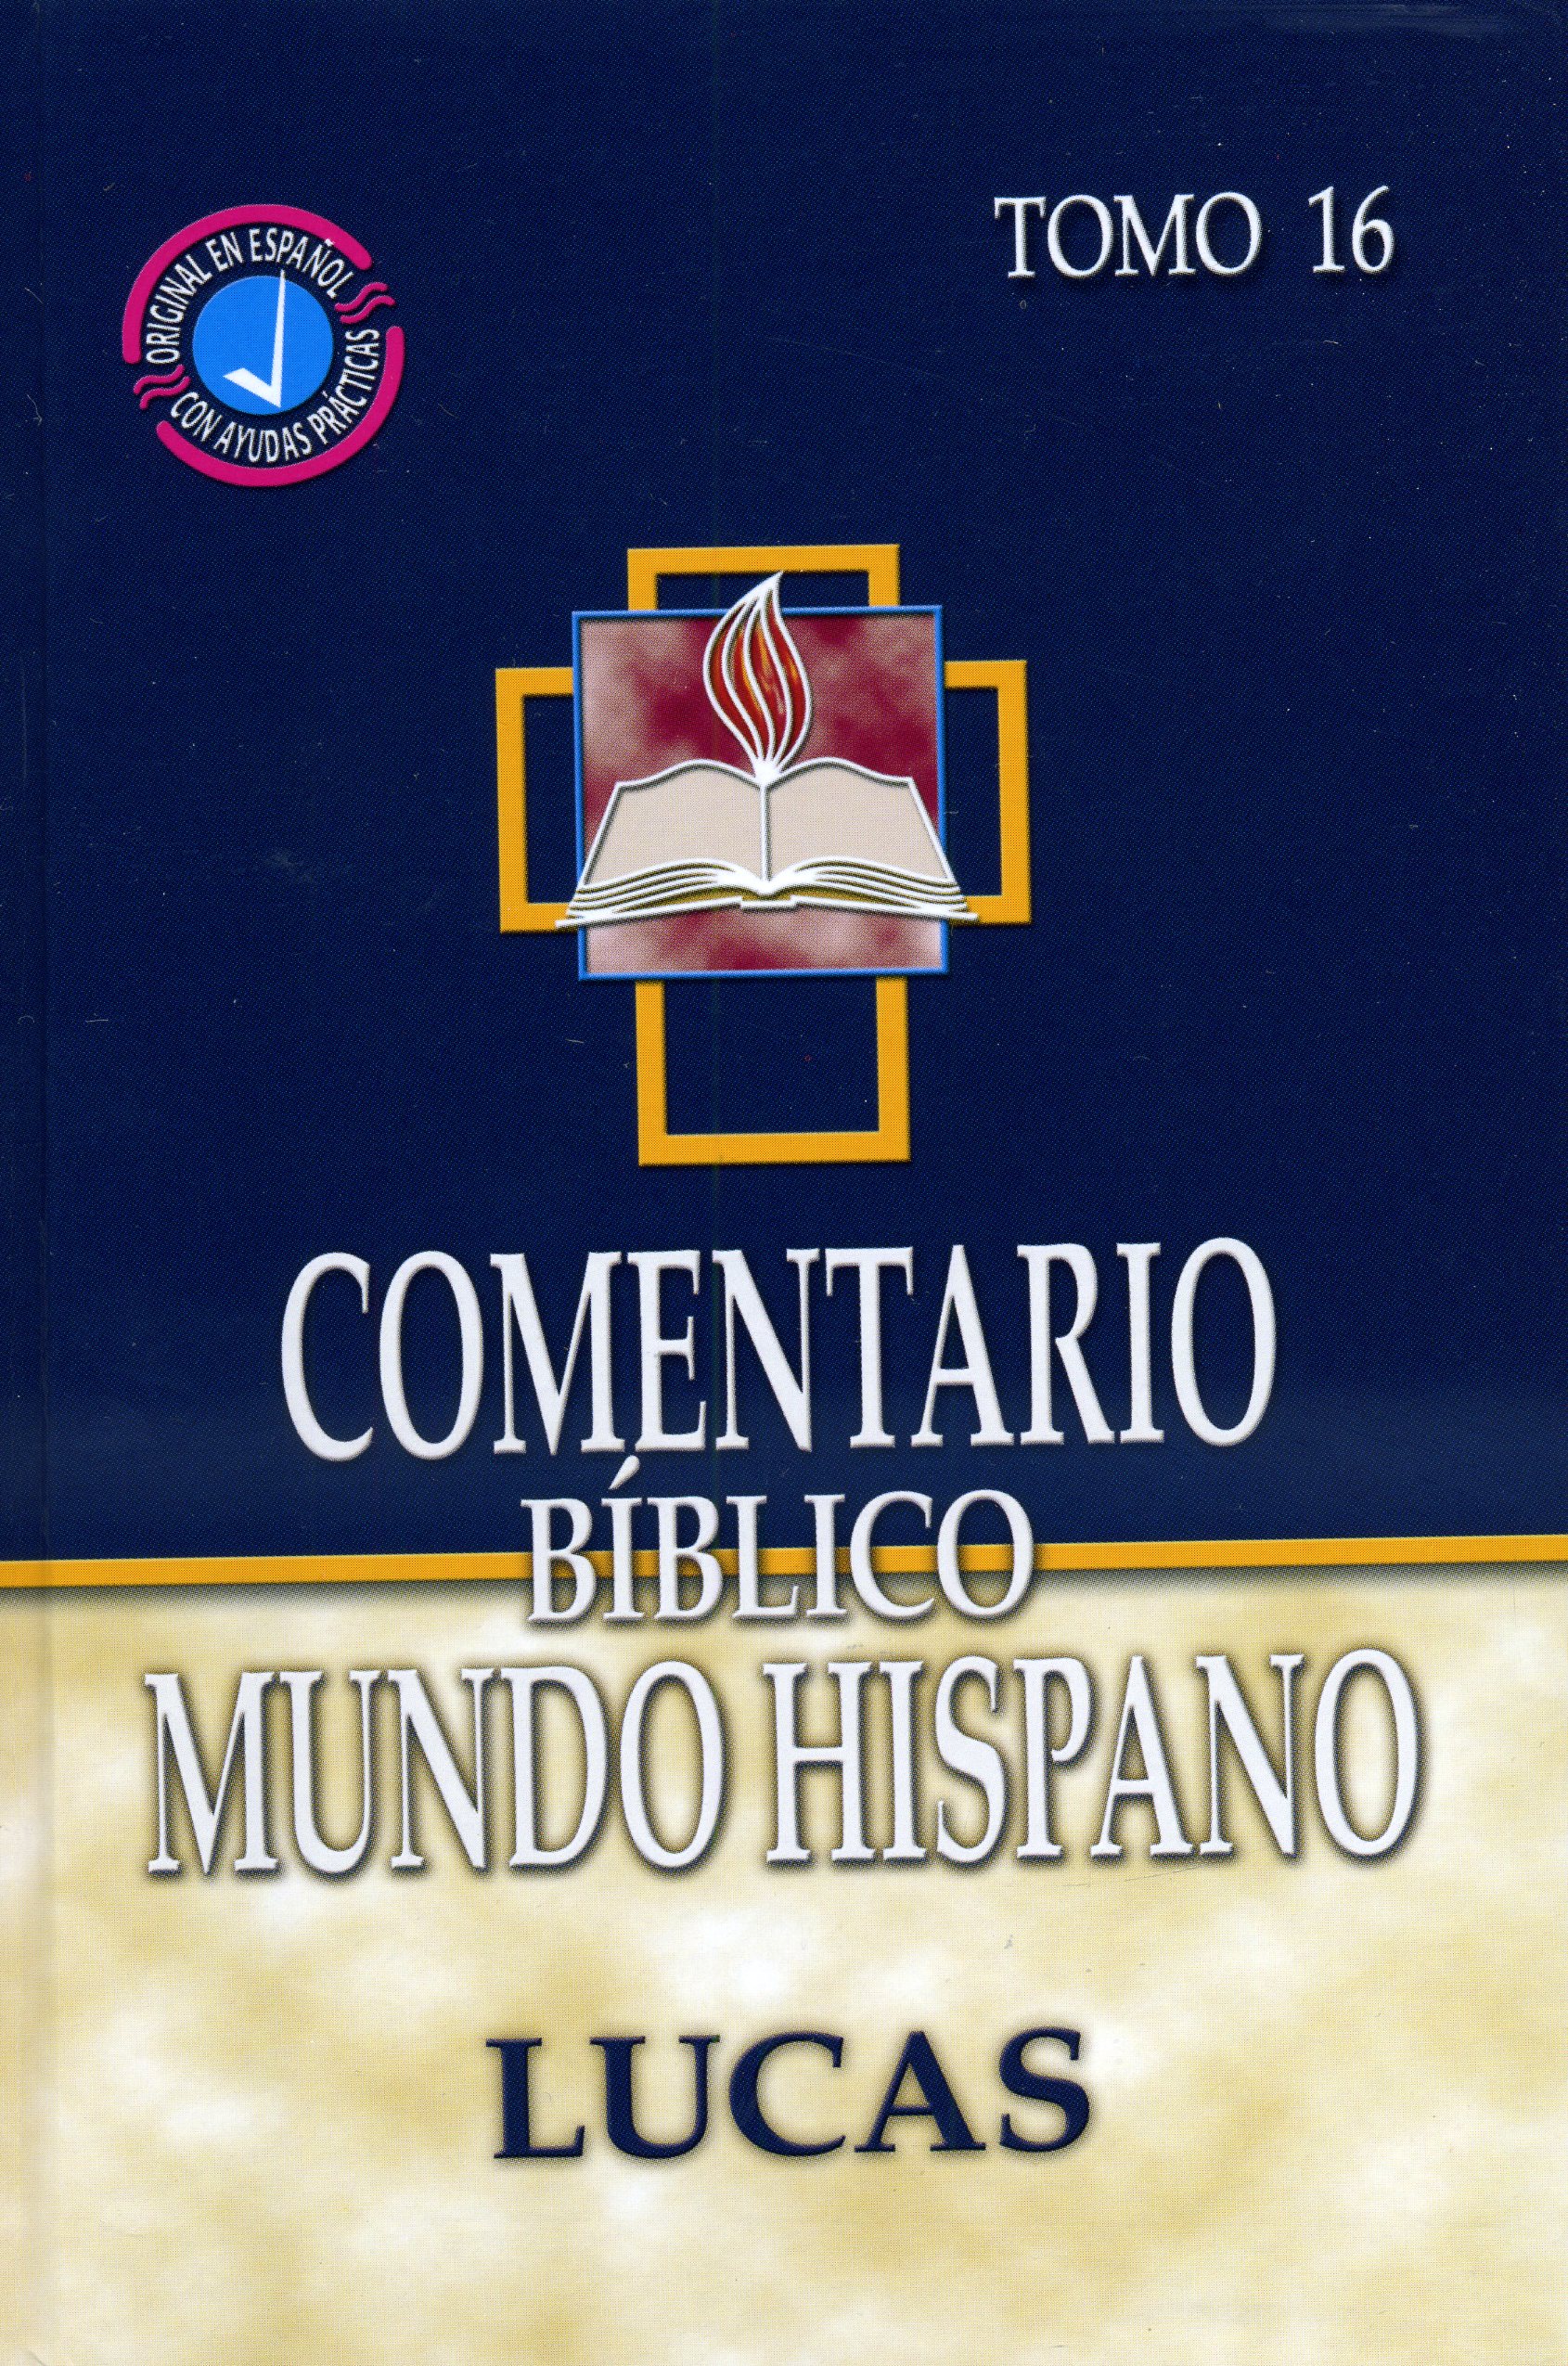 Comentario bíblico mundo hispano - Lucas Tomo 16